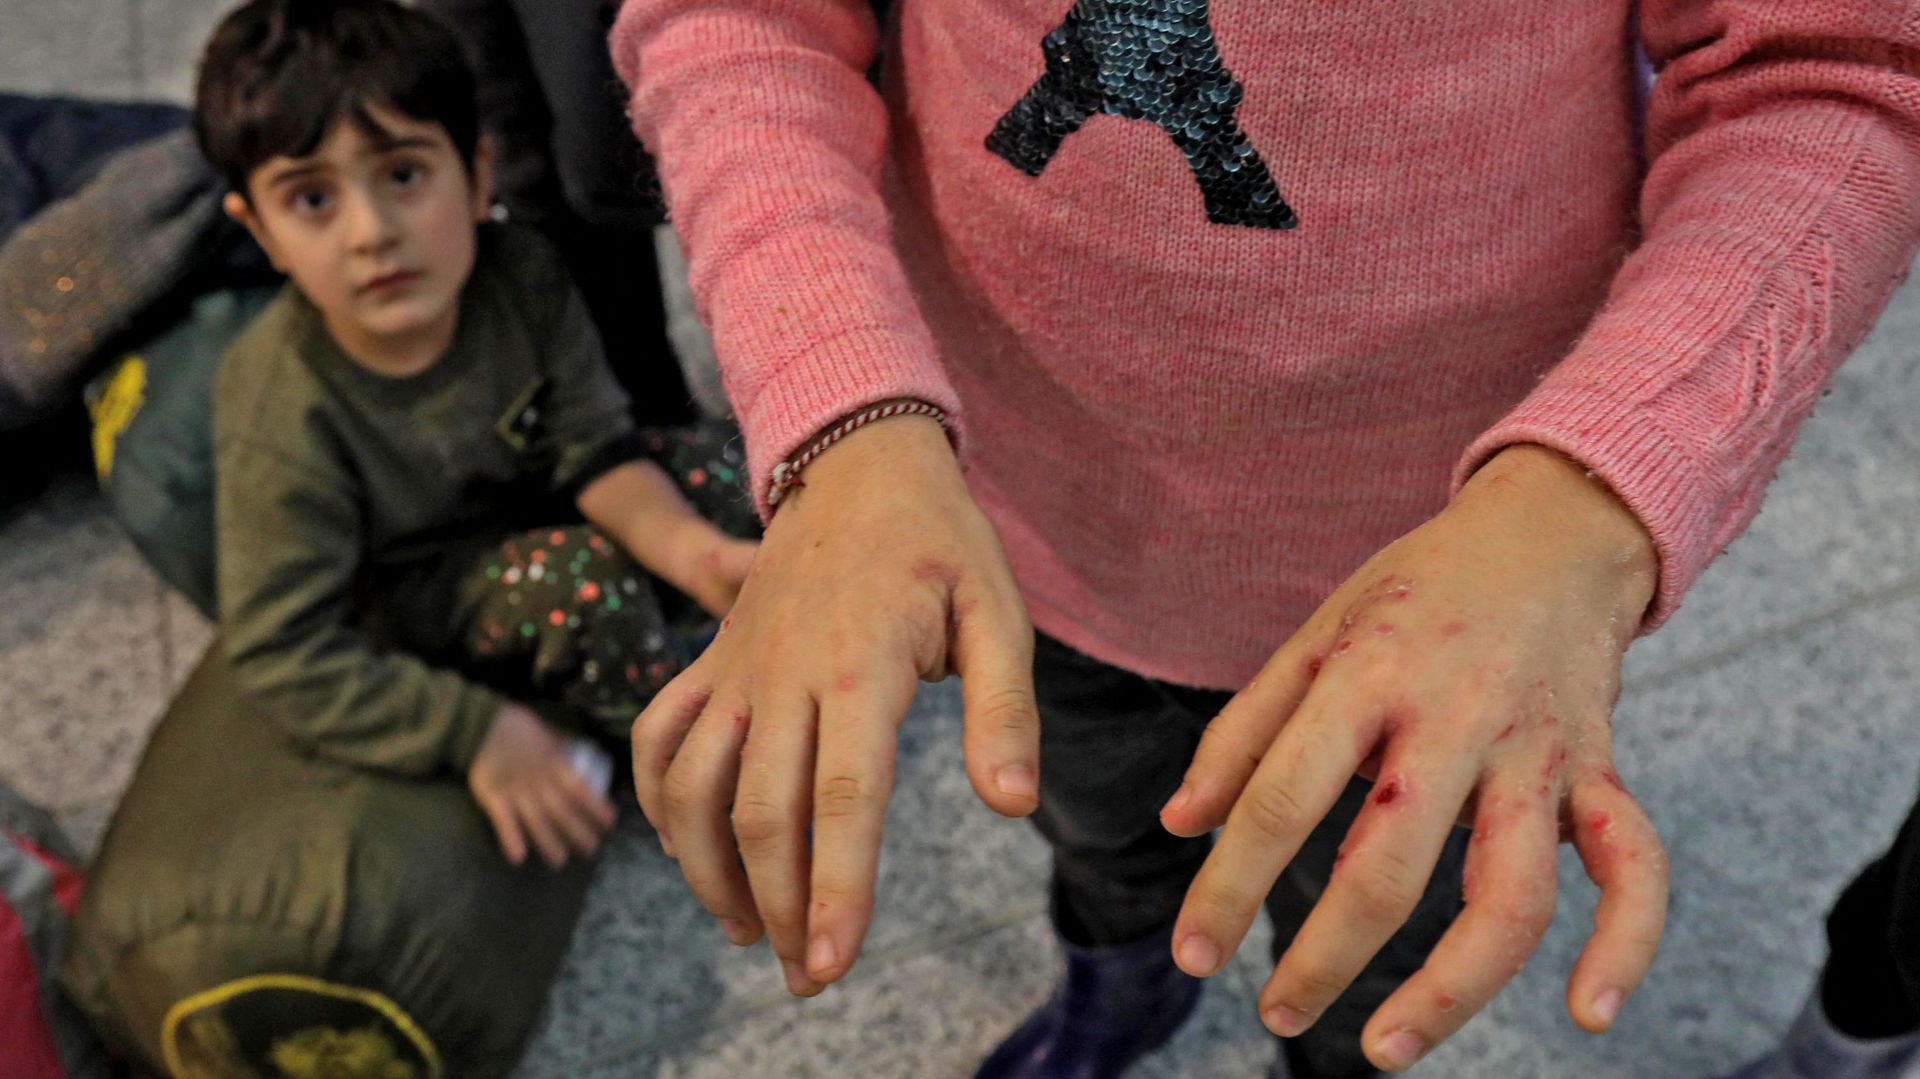 Une personne originaire d’Irak, rapatriée de Minsk, présente des blessures aux mains causées par un froid extrême subi alors qu’elle tentait d’entrer dans l’UE depuis la Biélorussie, le 26 novembre 2021